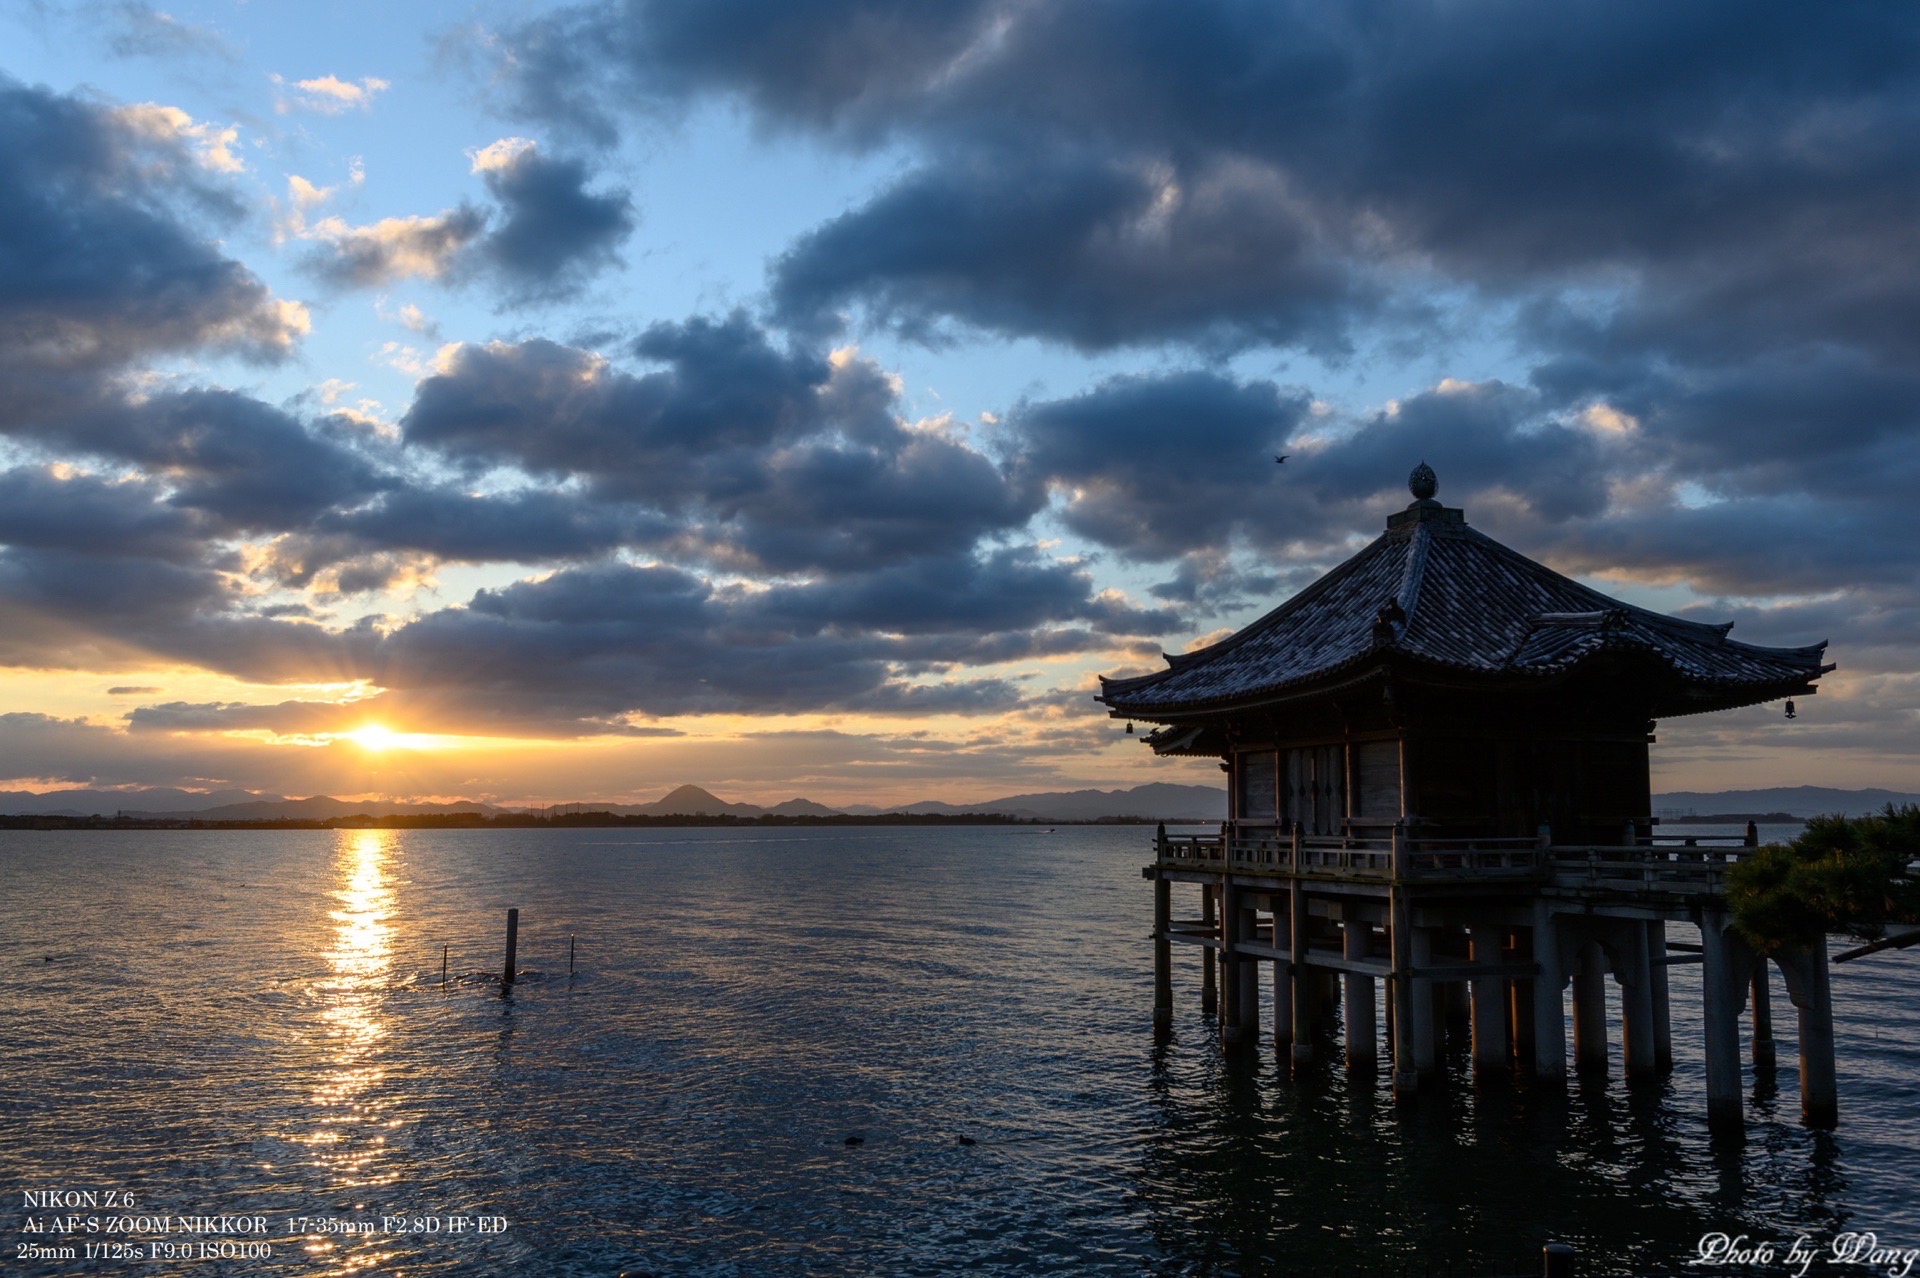 自然与人文景观的完美结合——琵琶湖  翻开日本地图，细心的朋友会发现，狭长的日本的正中间有一块面积不